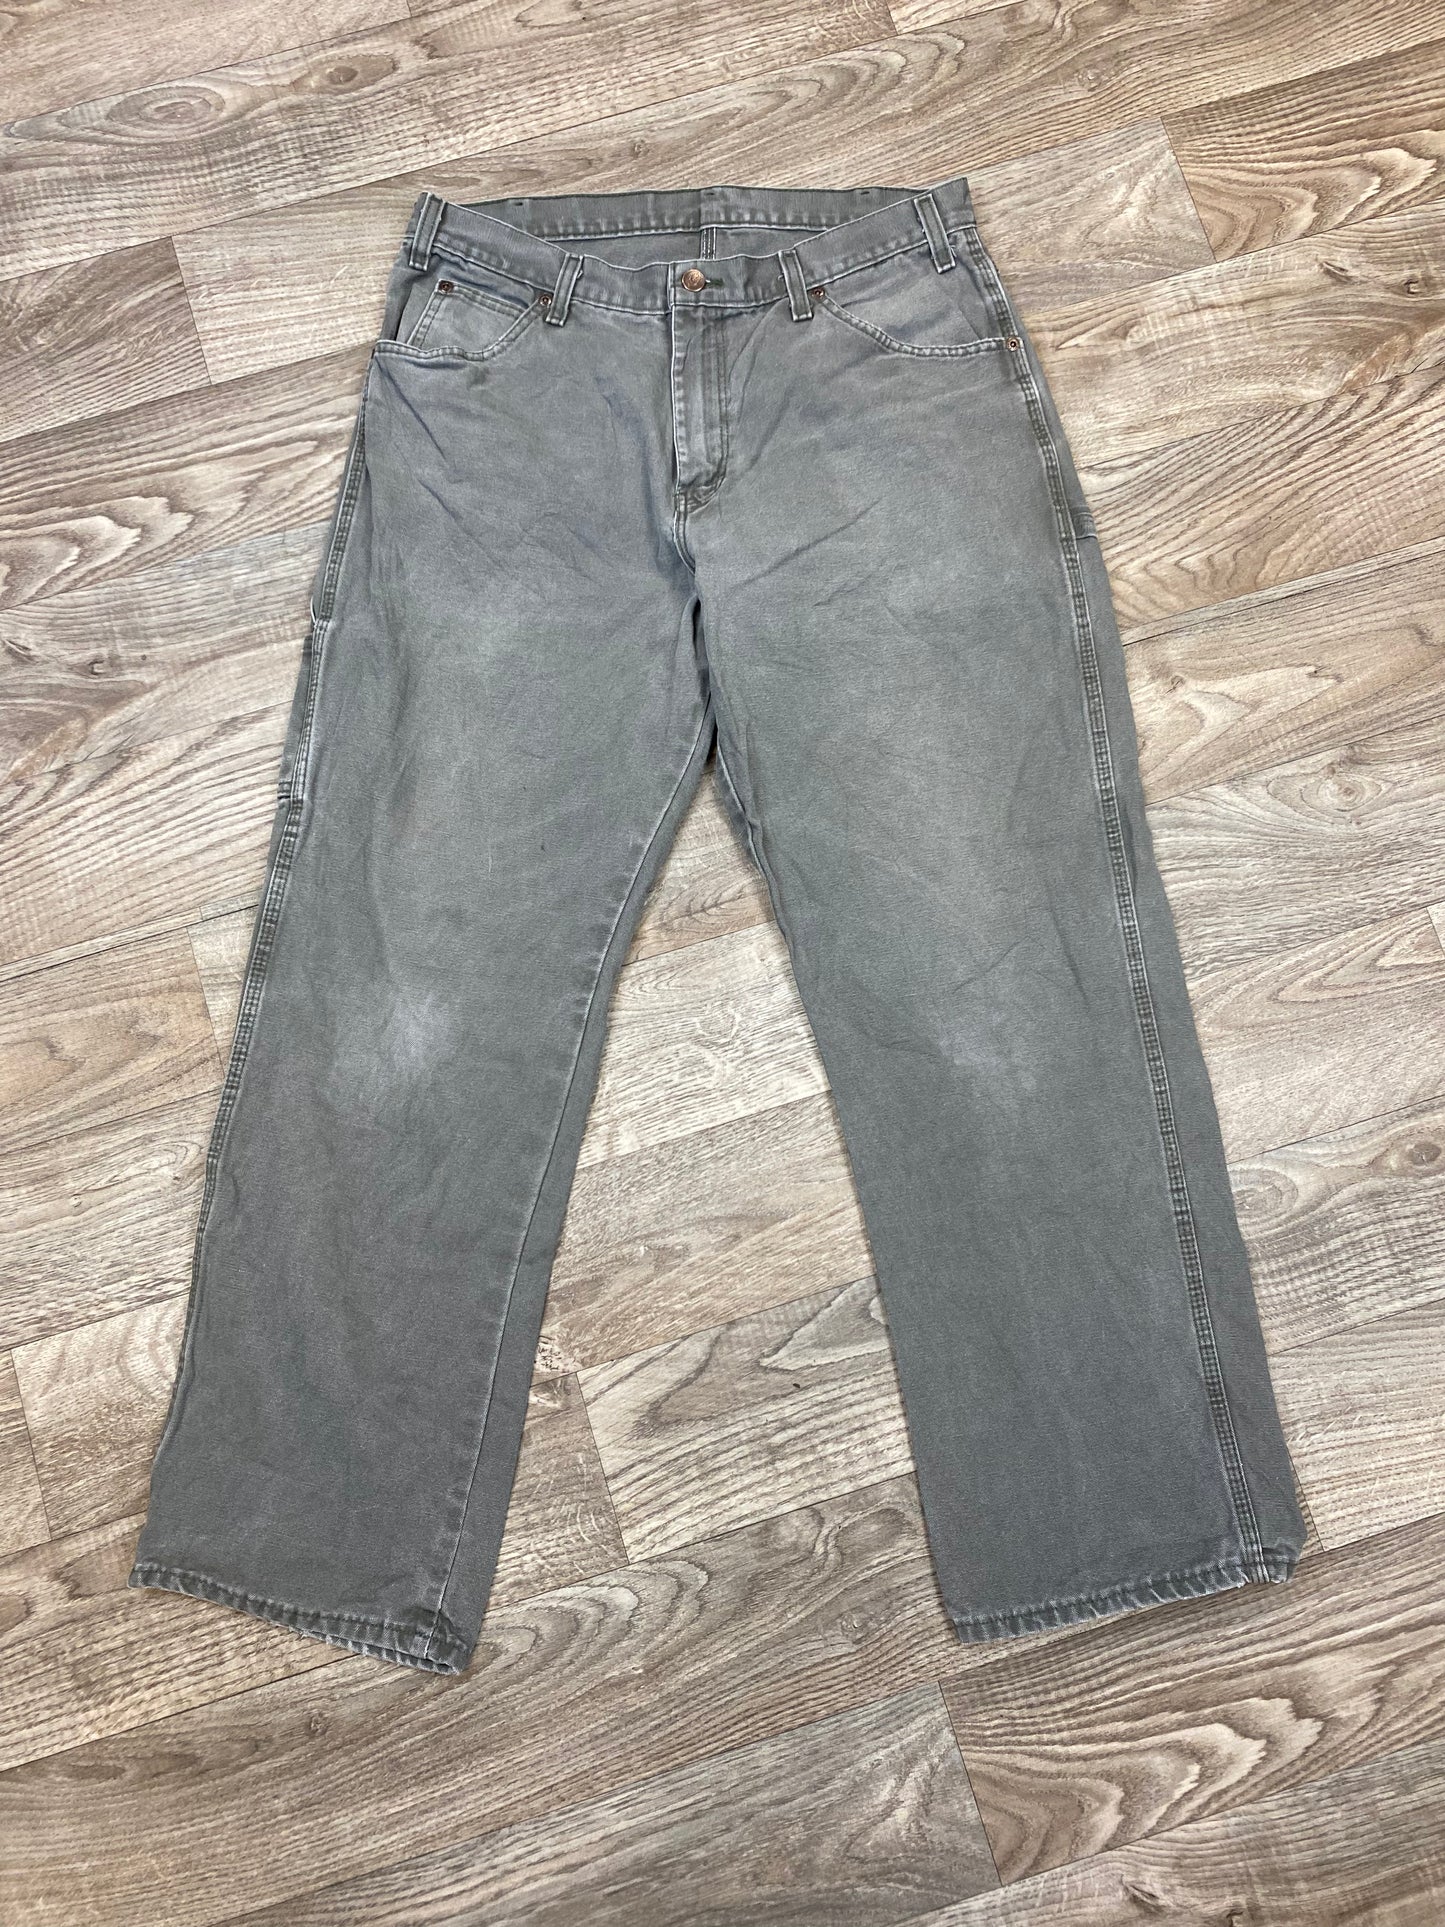 Vintage Dickies 34x30 Carpenter Pants